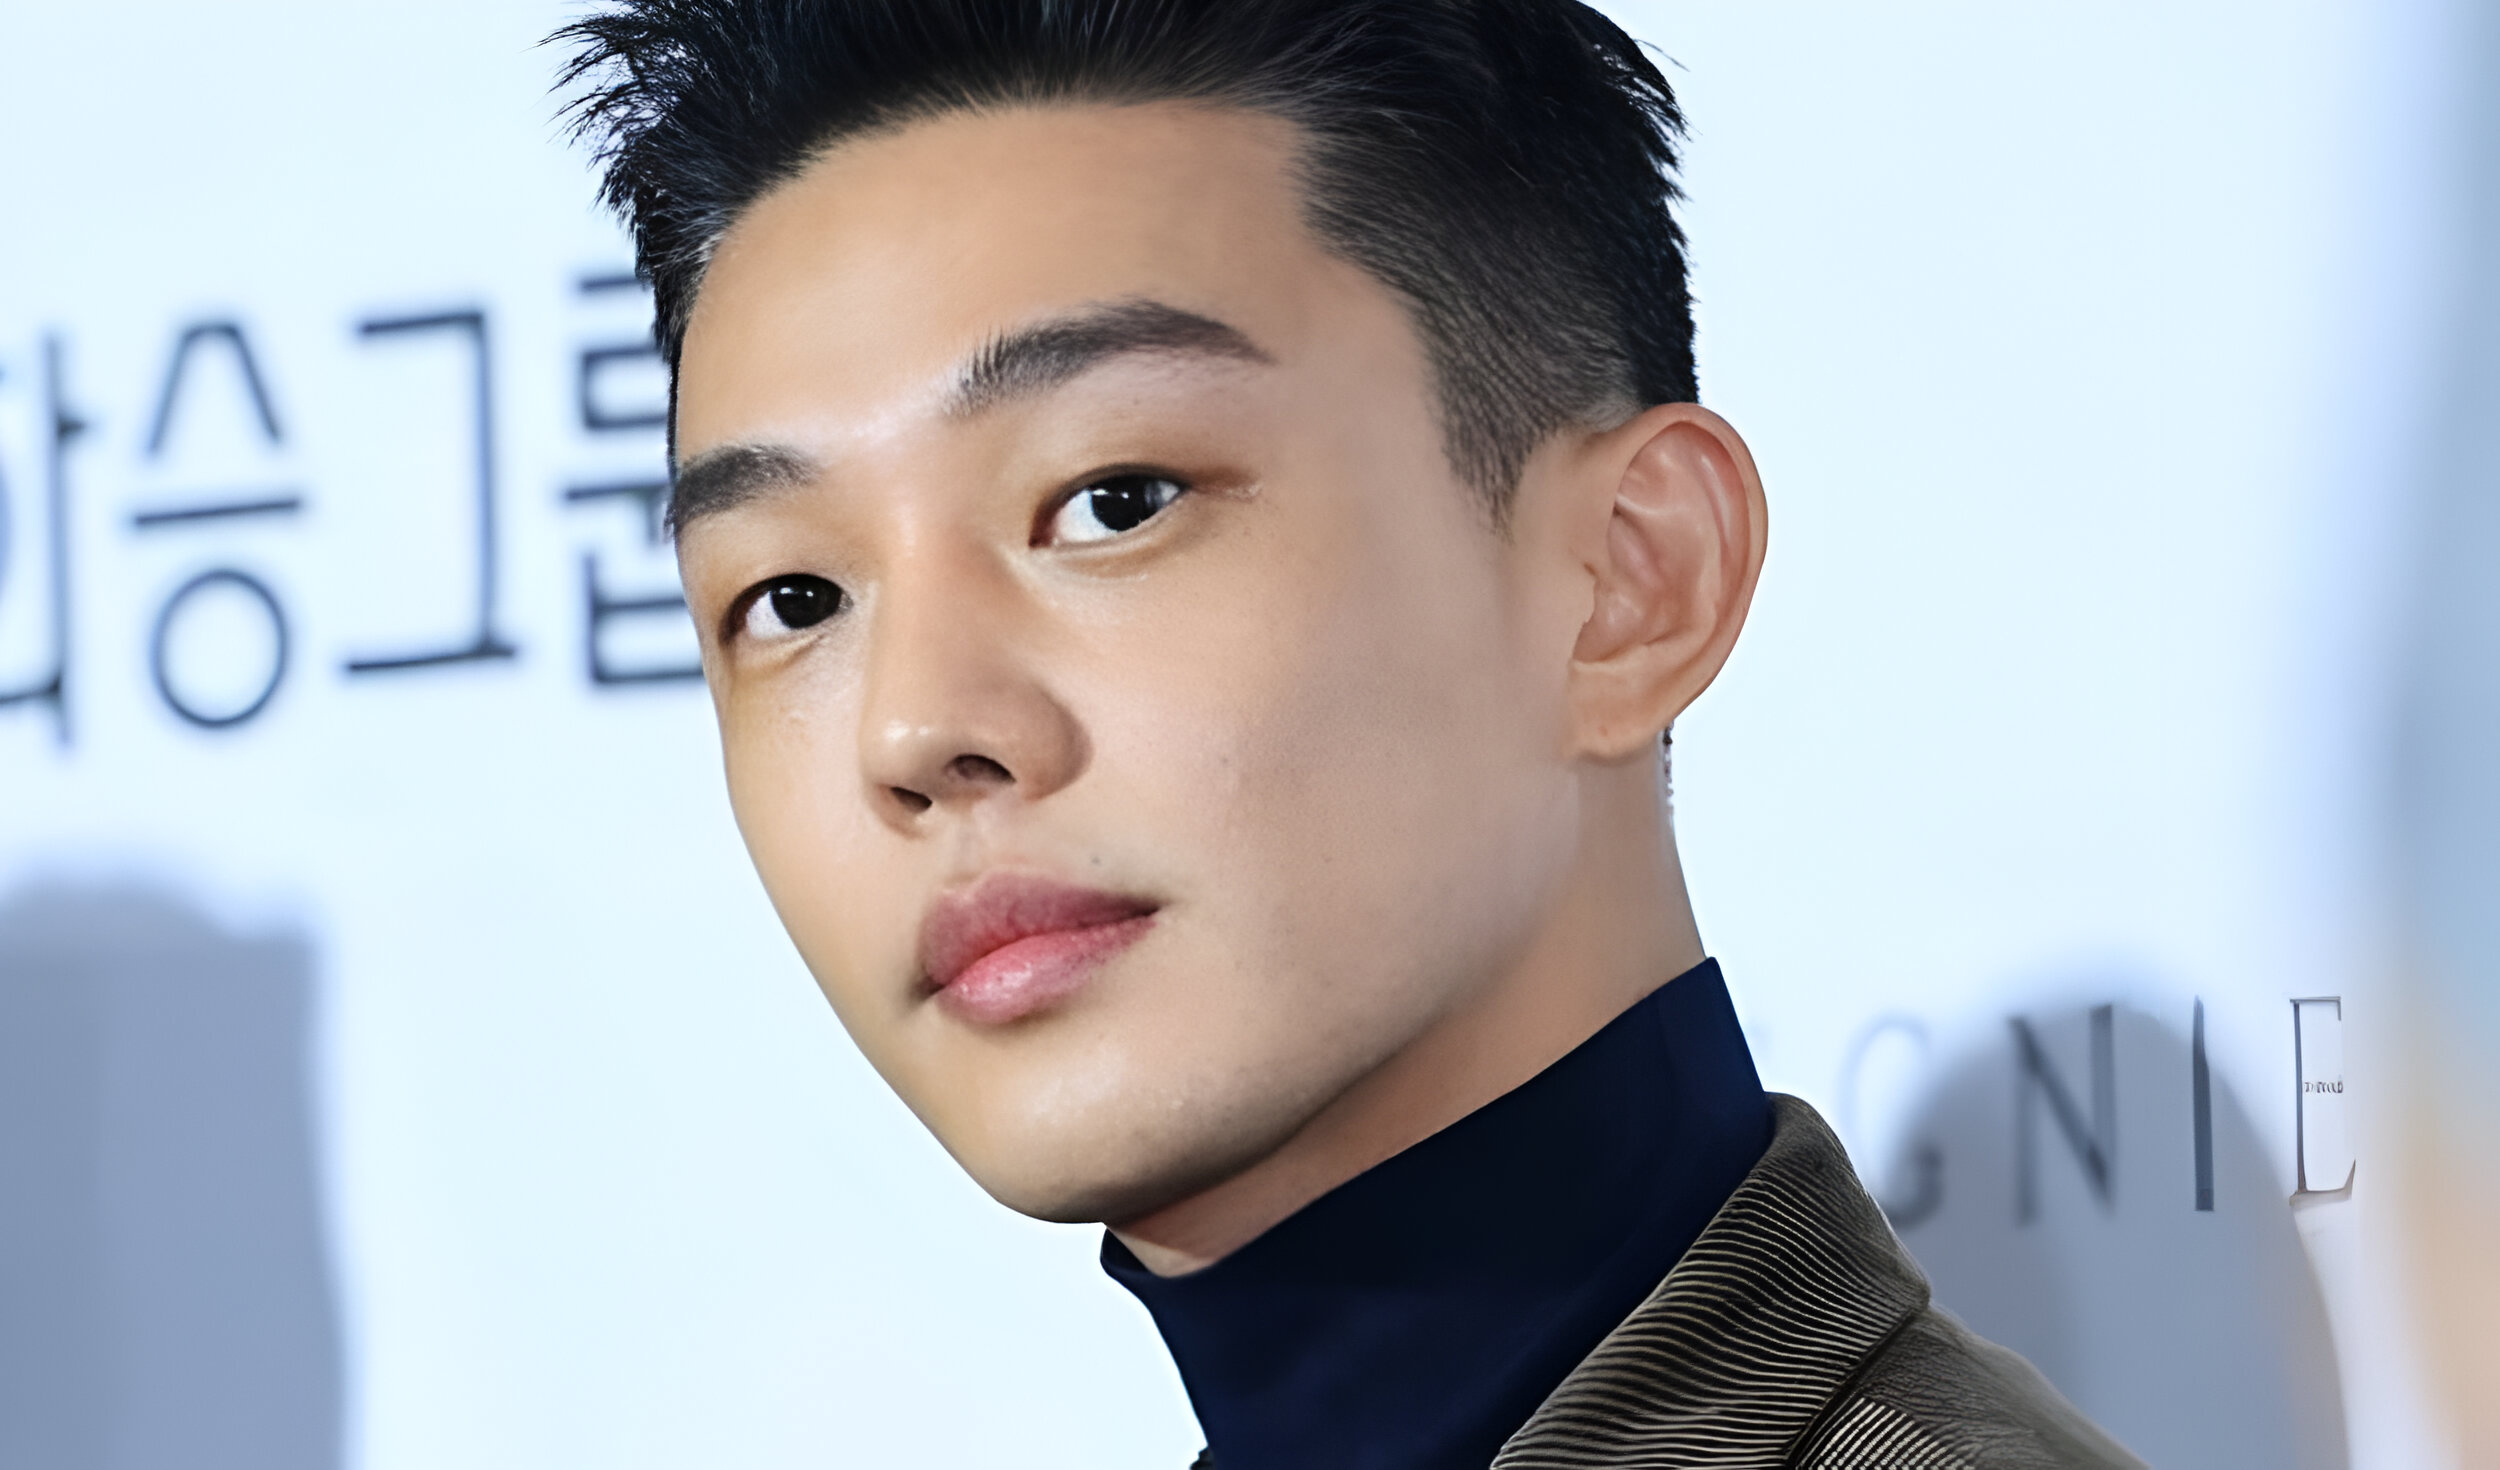 
                                 Actor coreano Yoo Ah In se defiende tras ser acusado de agredir sexualmente a un hombre de 30 años 
                            